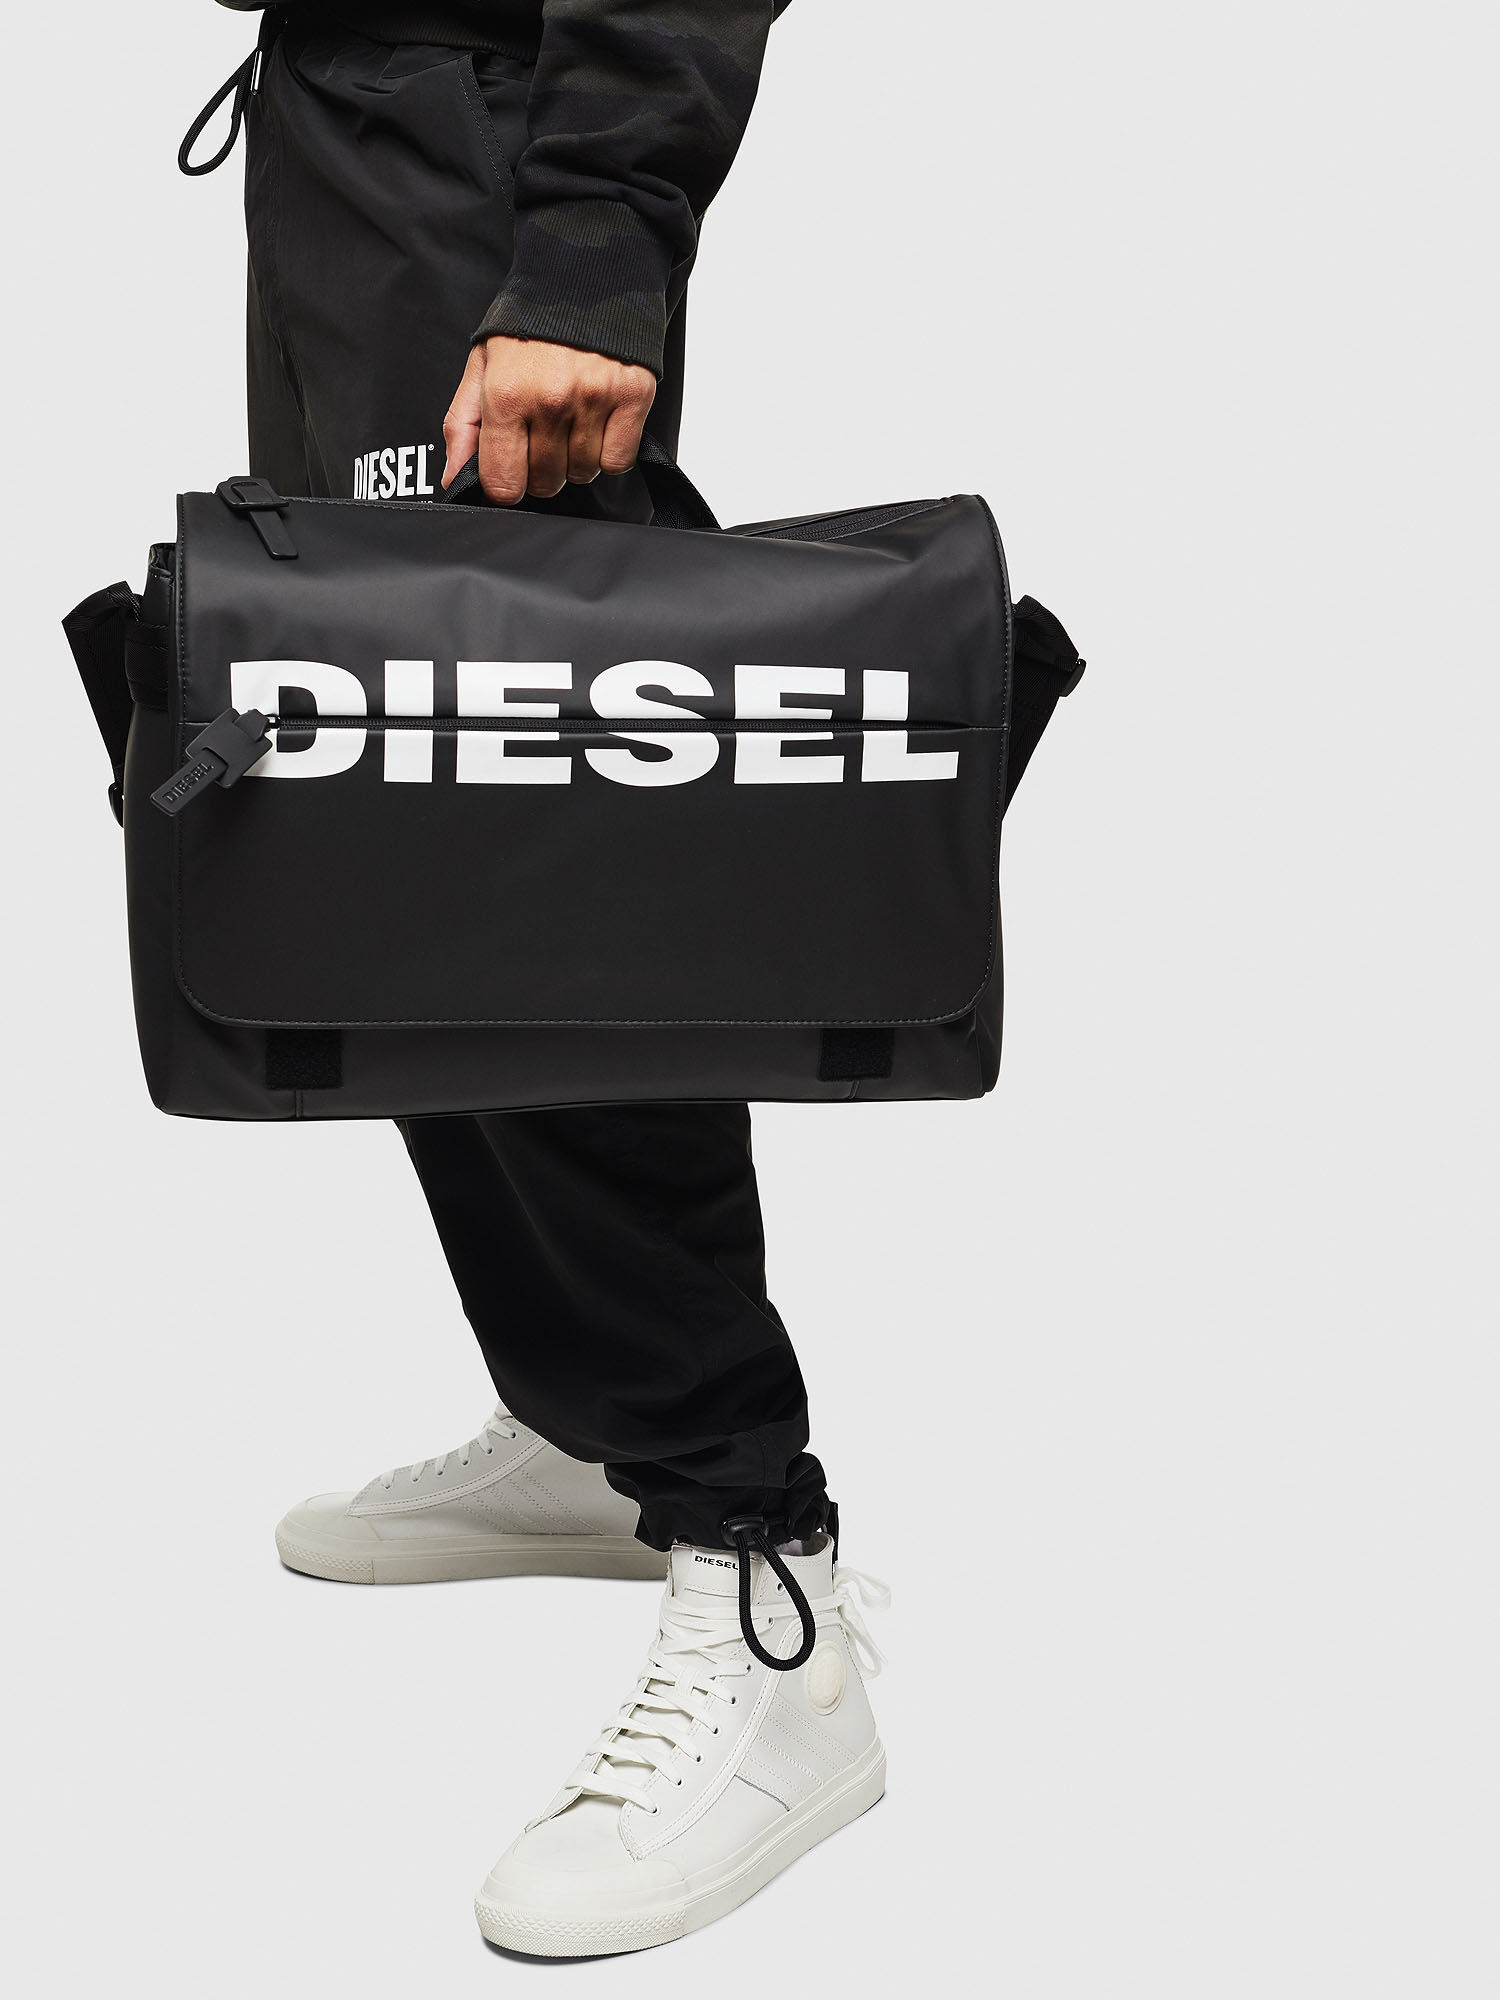 diesel shoulder bag